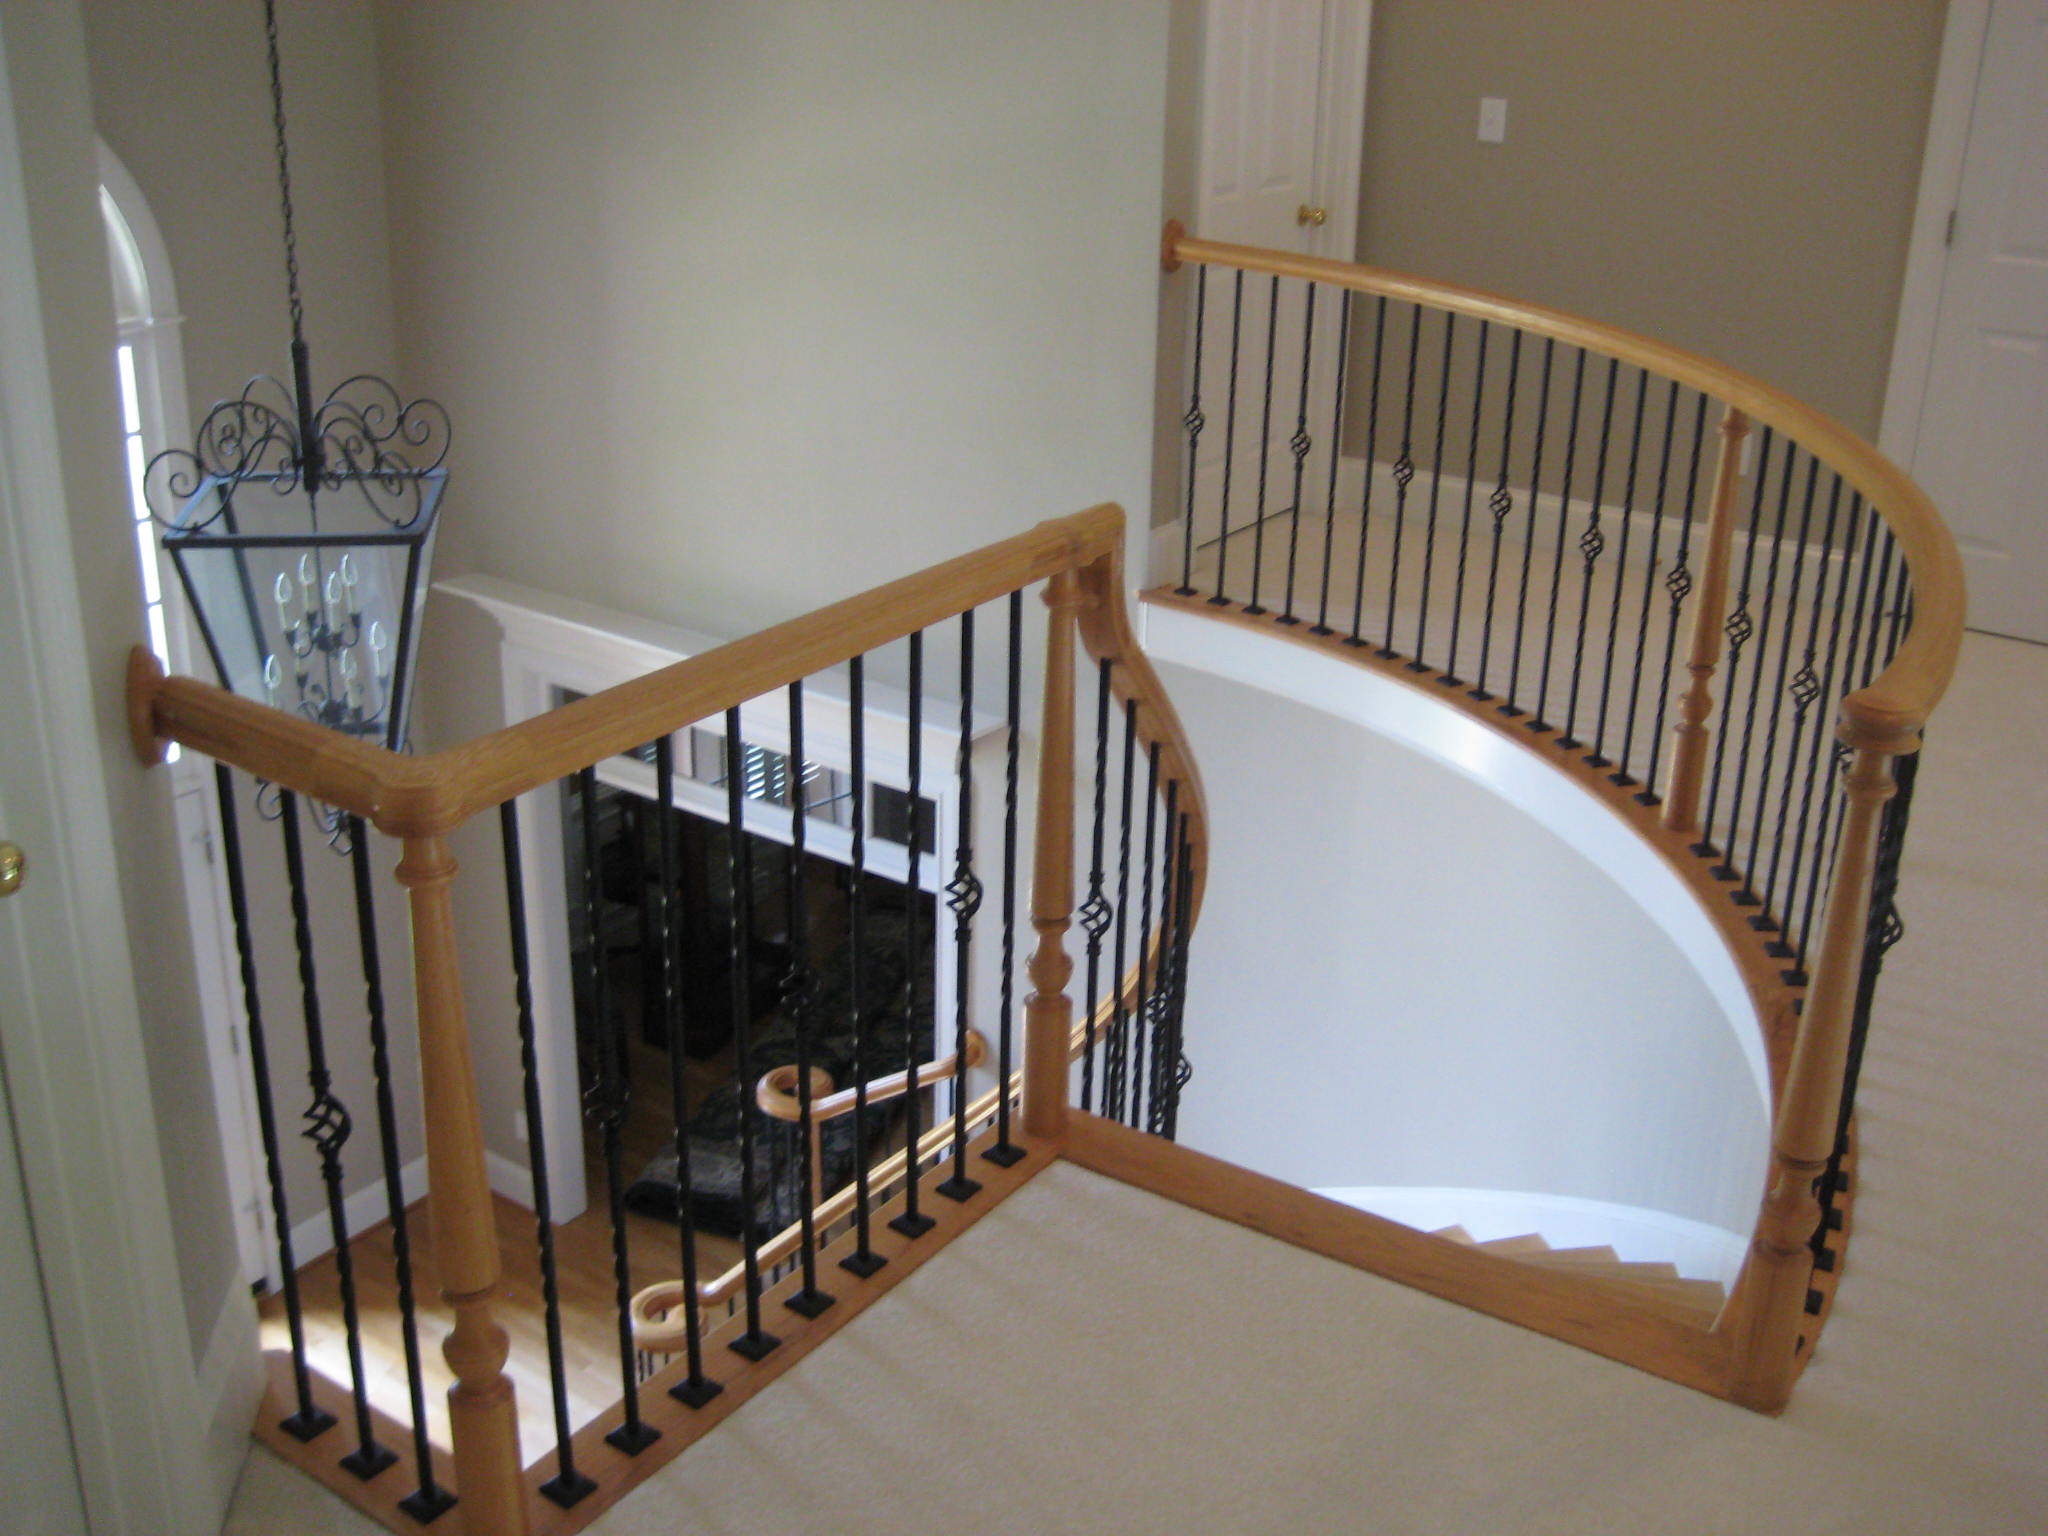 Iron Balusters enhances elegant staircase.